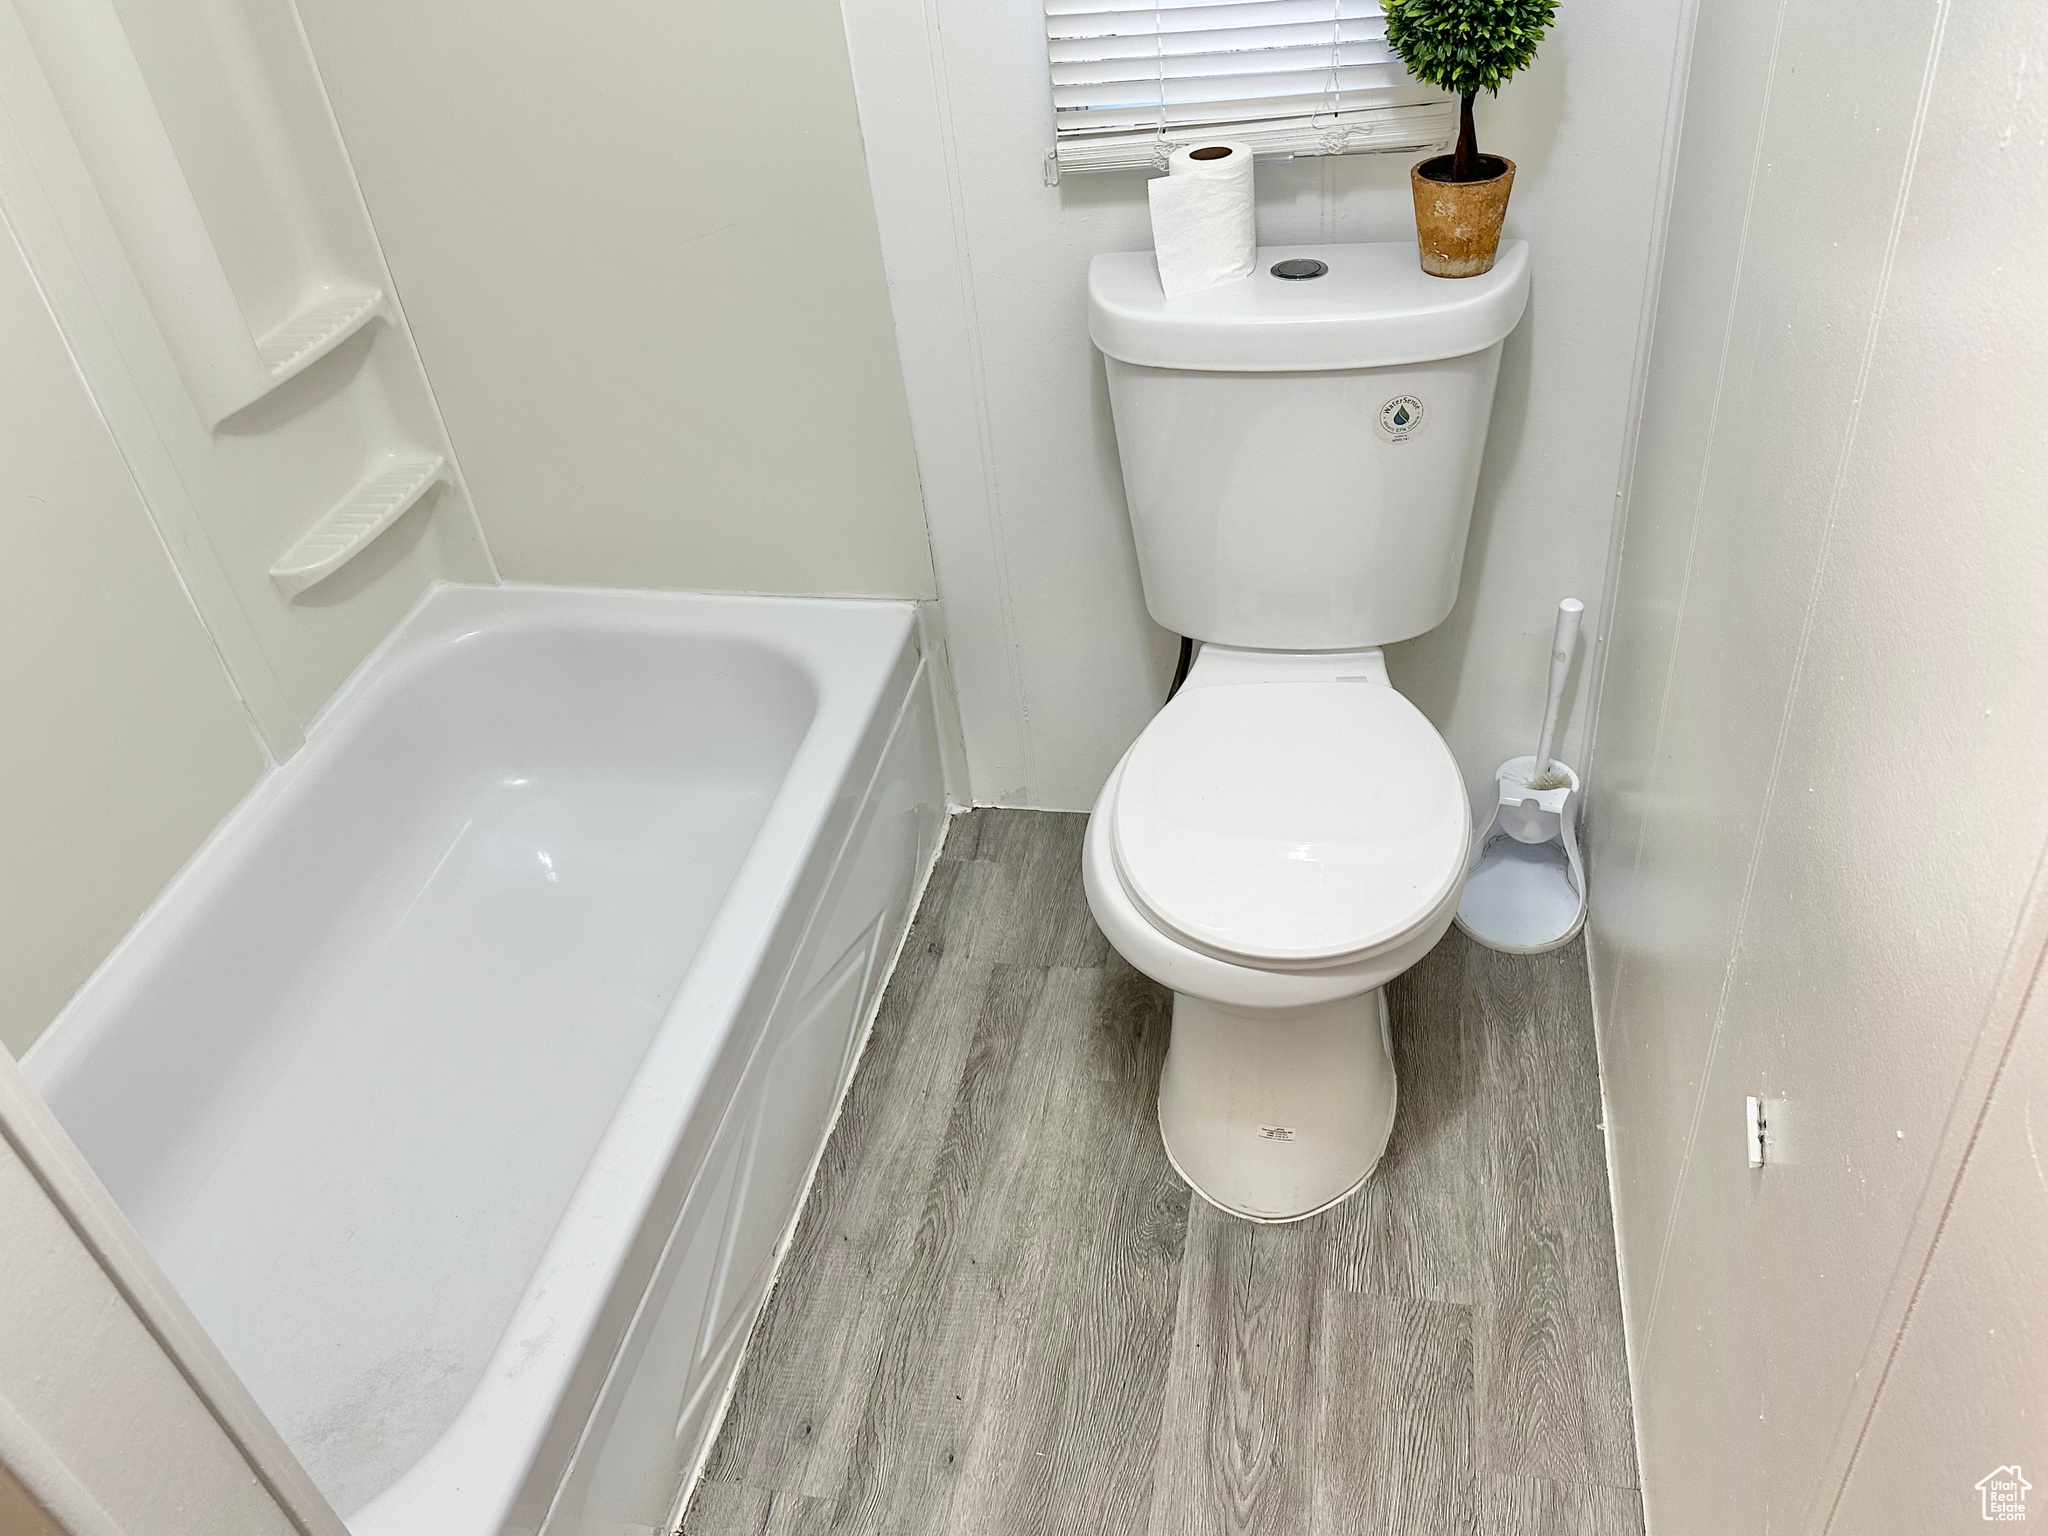 Bathroom featuring hardwood / wood-style floors and toilet